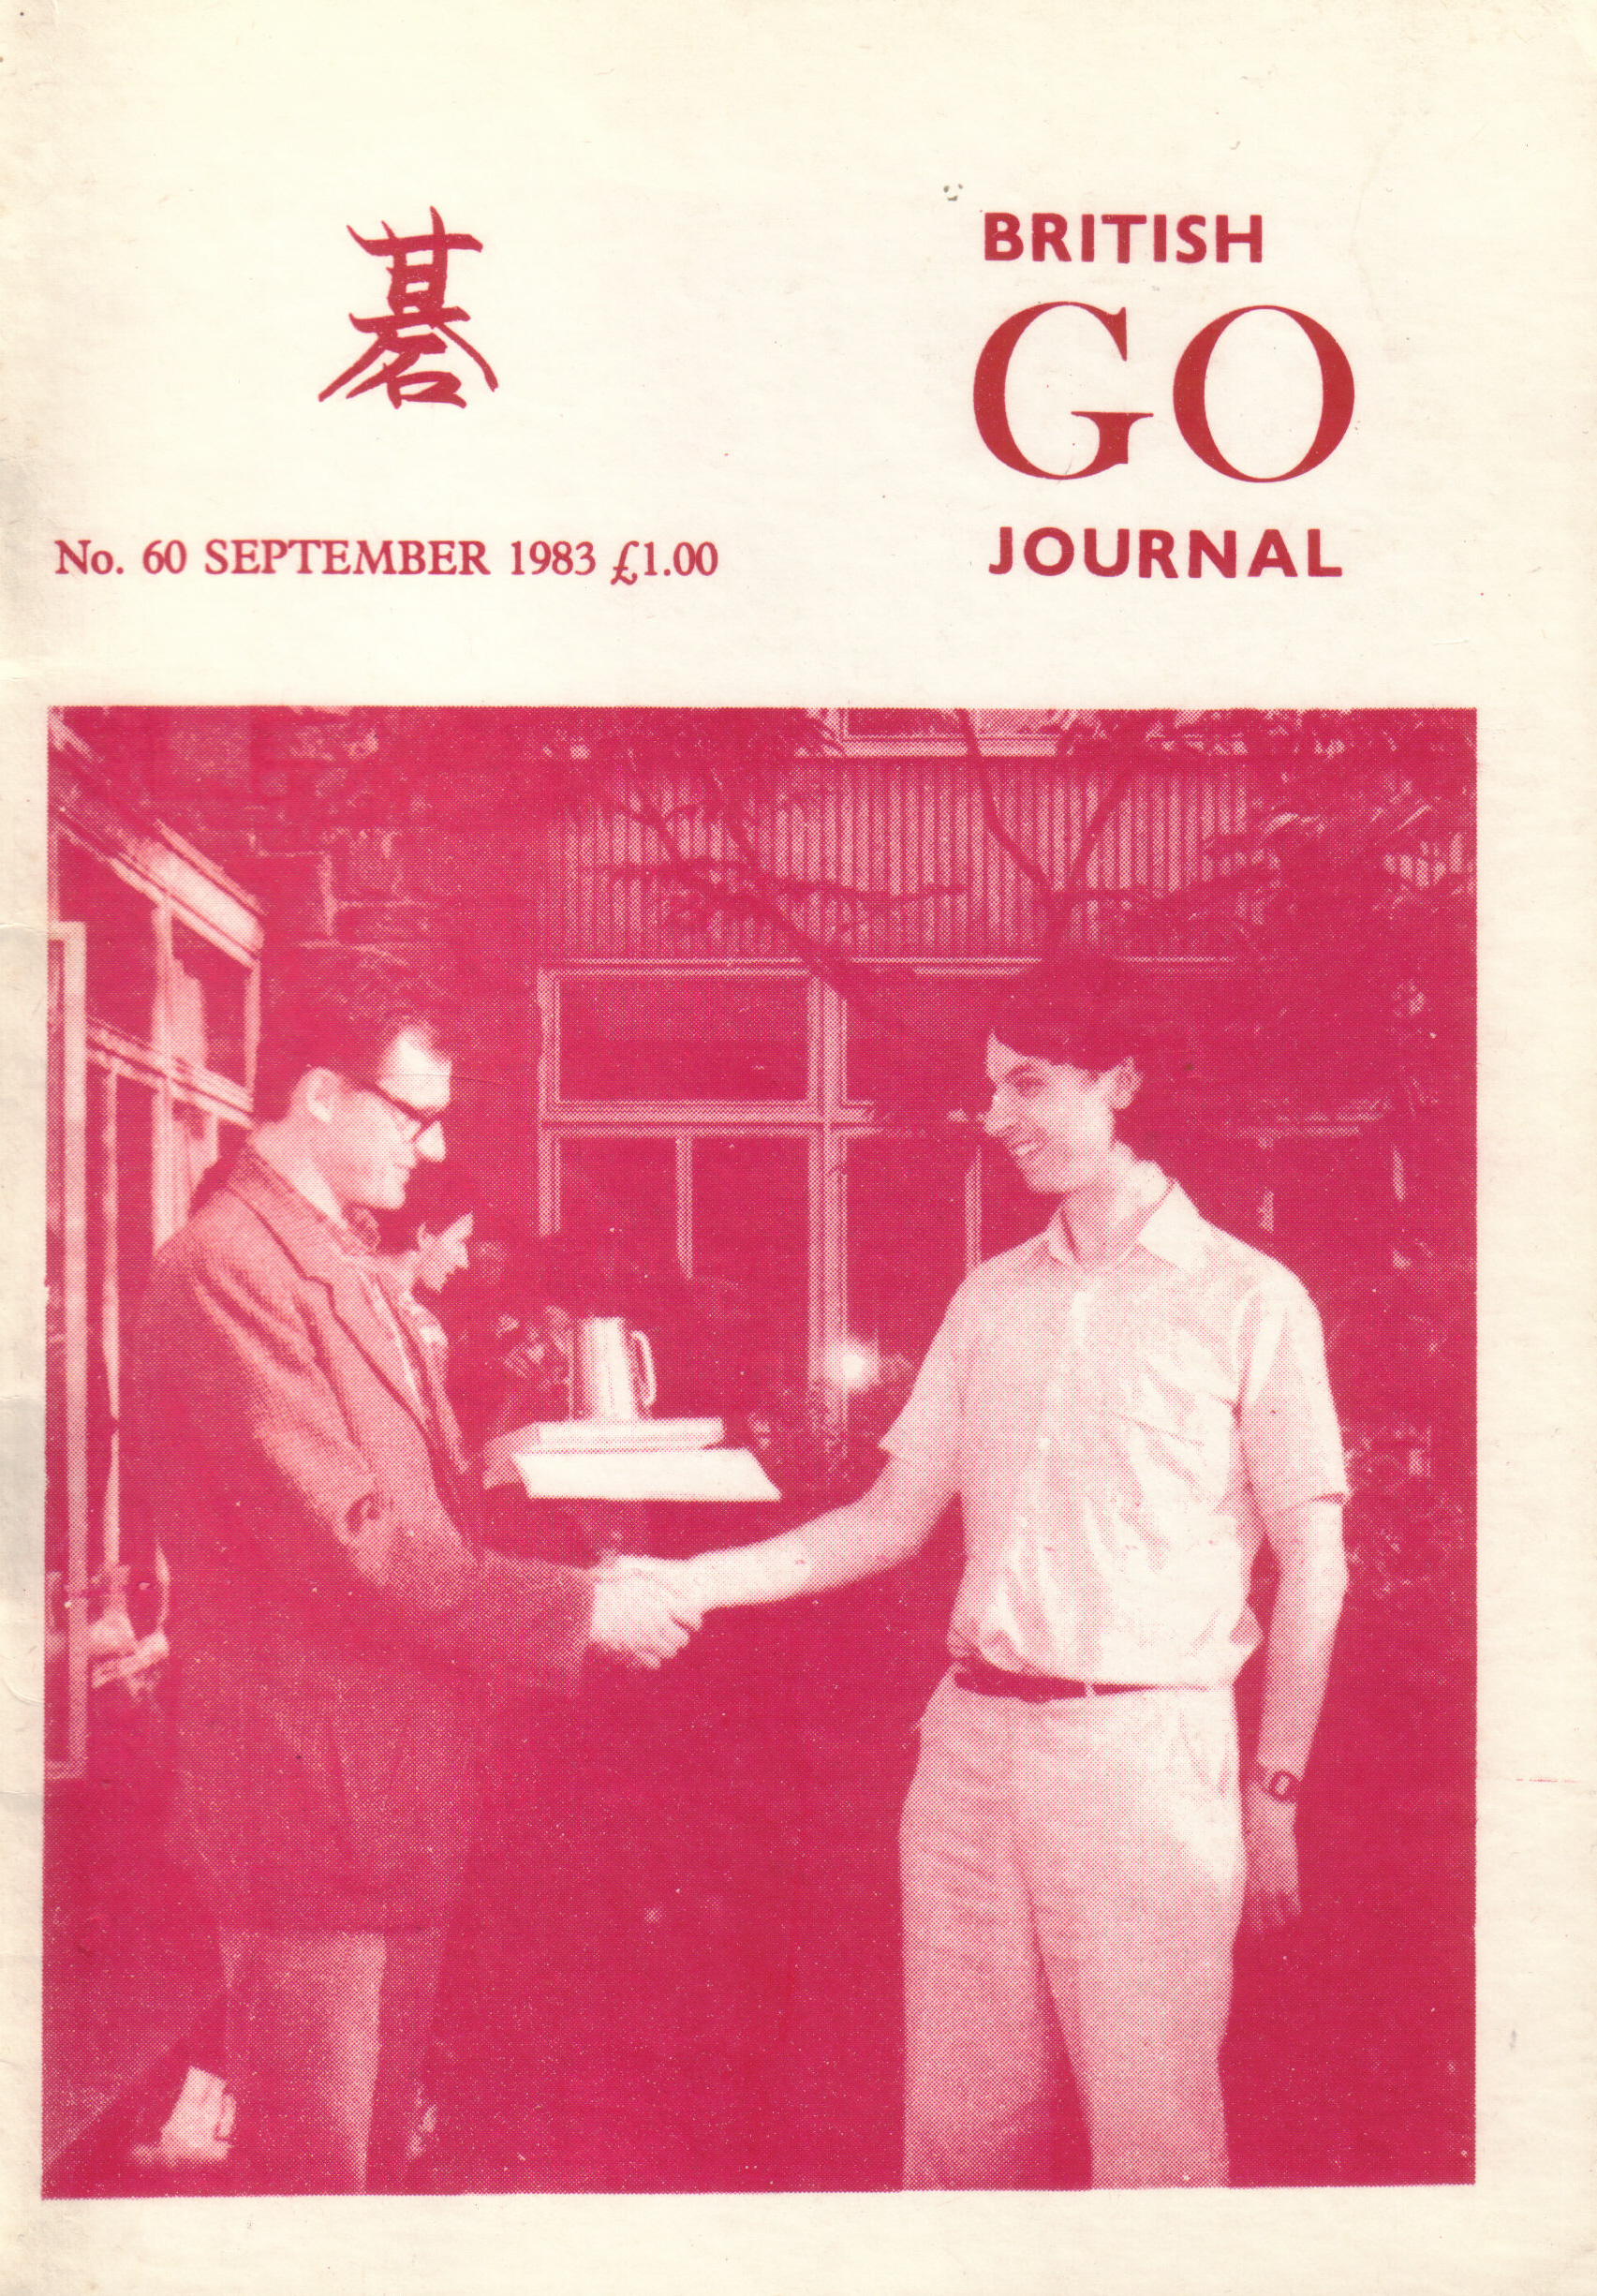 Okładka British Go Journal no. 60 (wrzesień 1983) - Janusz Kraszek (po lewej) przyjmuje gratulacje od Richarda Granville